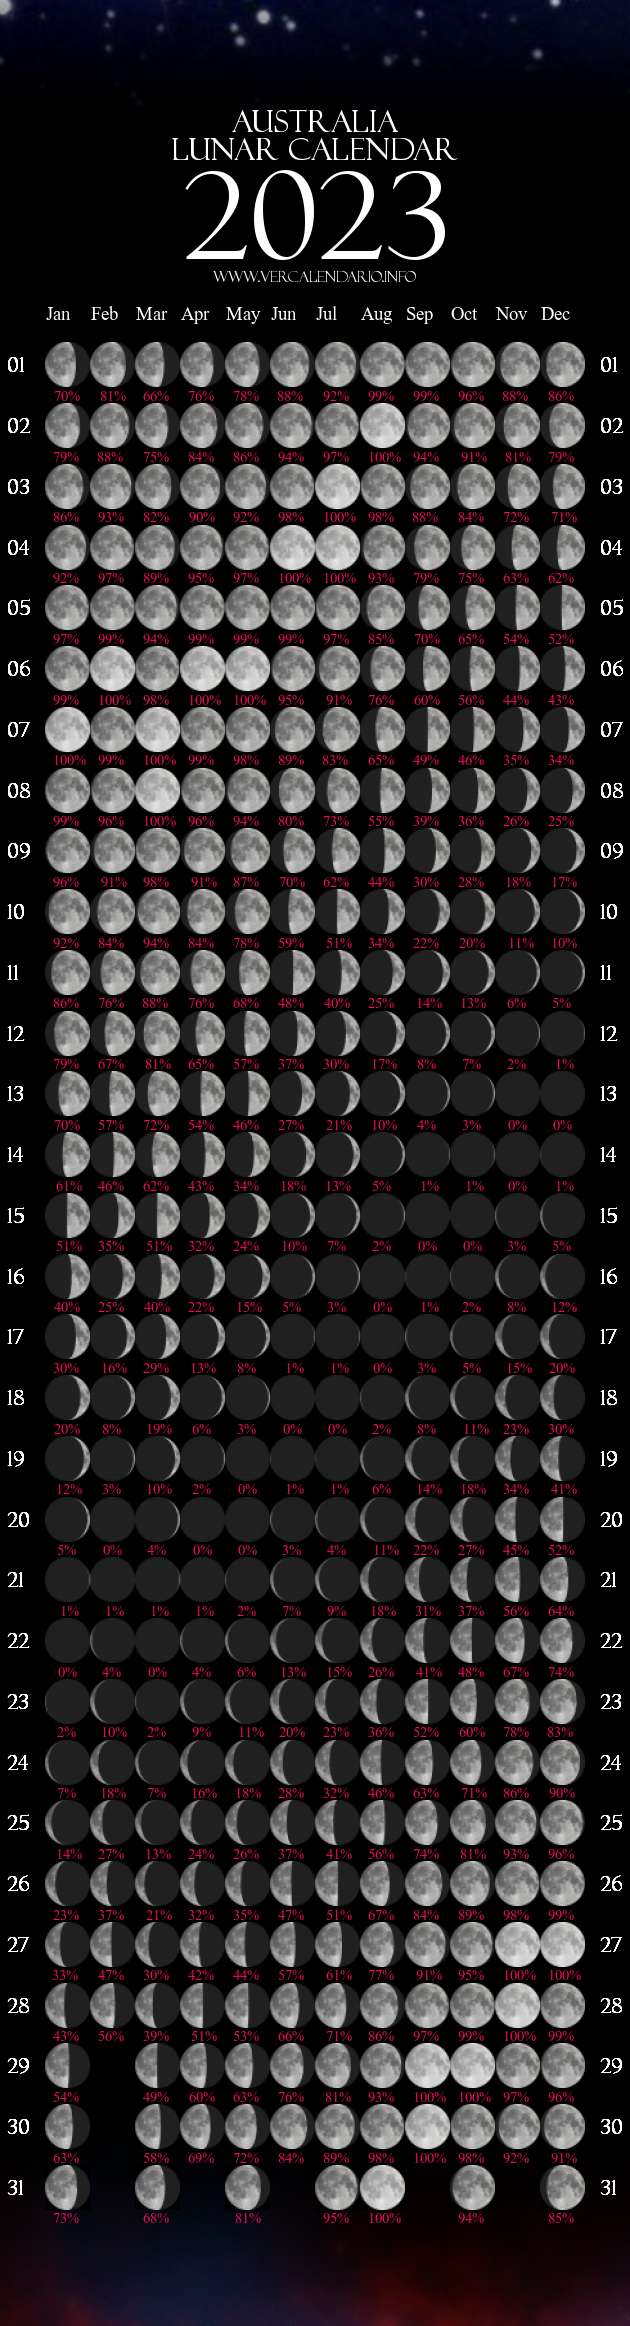 Lunar Calendar 2023 (Australia)